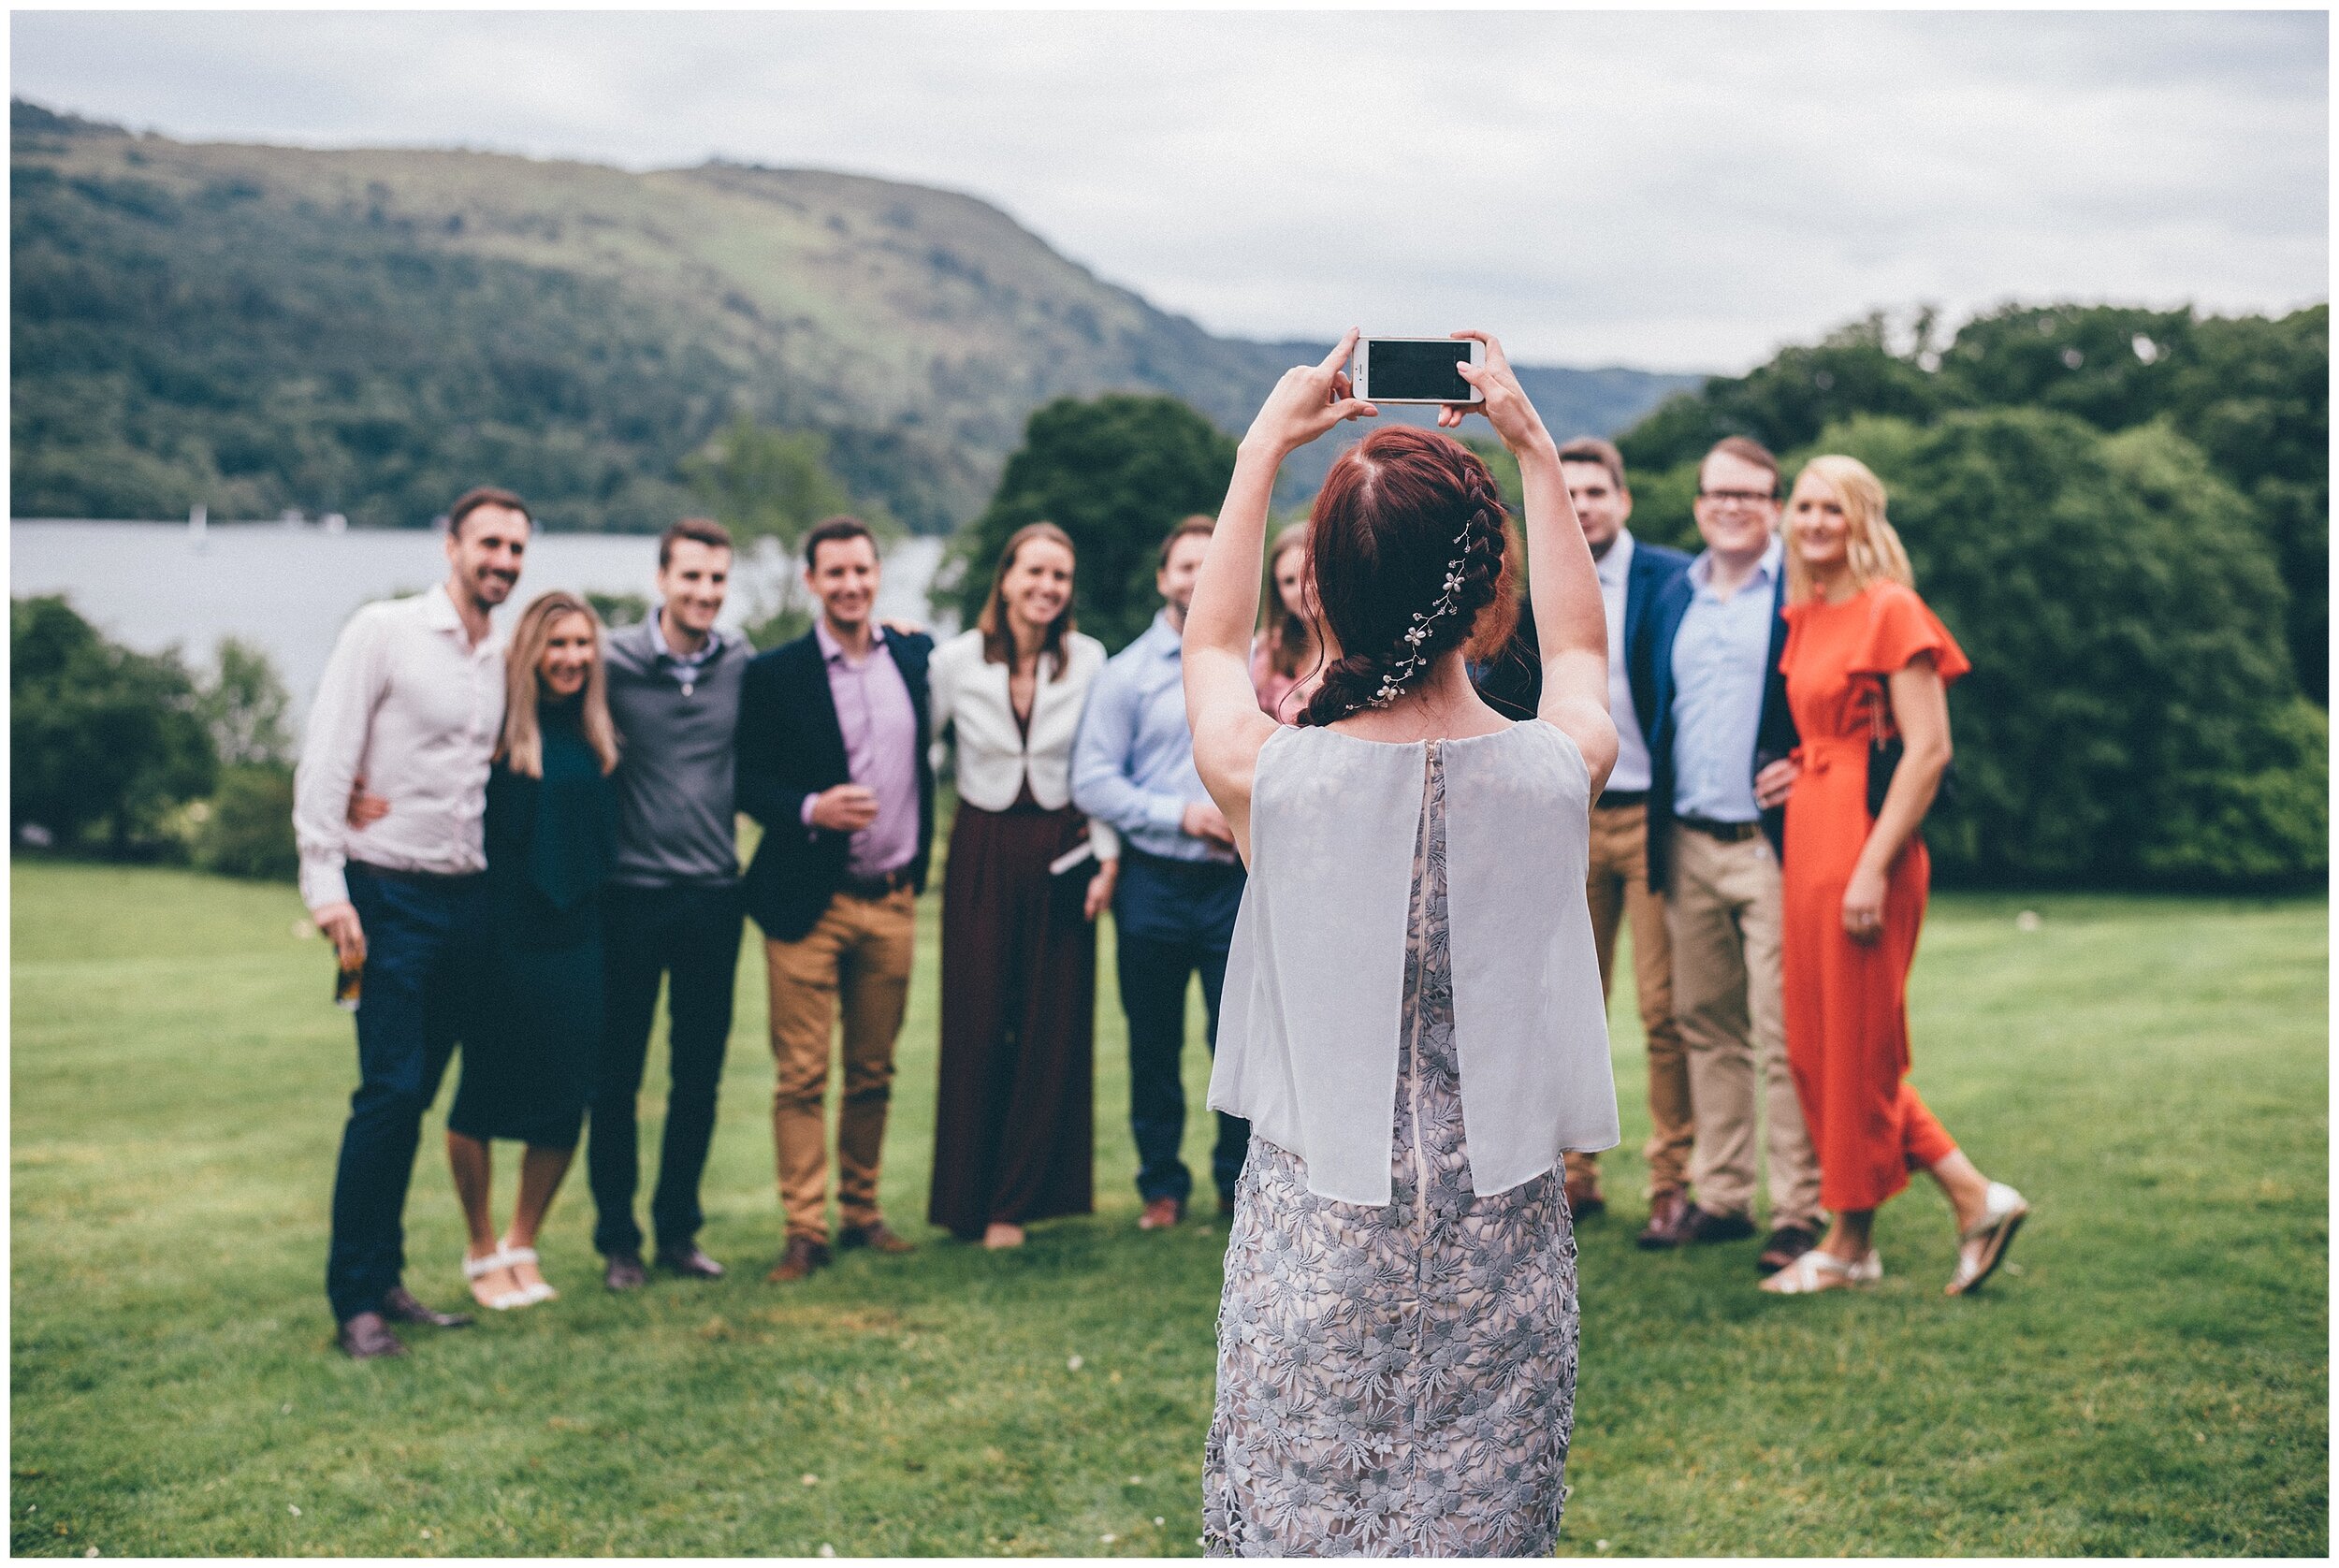 Wedding guests at Lake District venue, Silverholme manor.